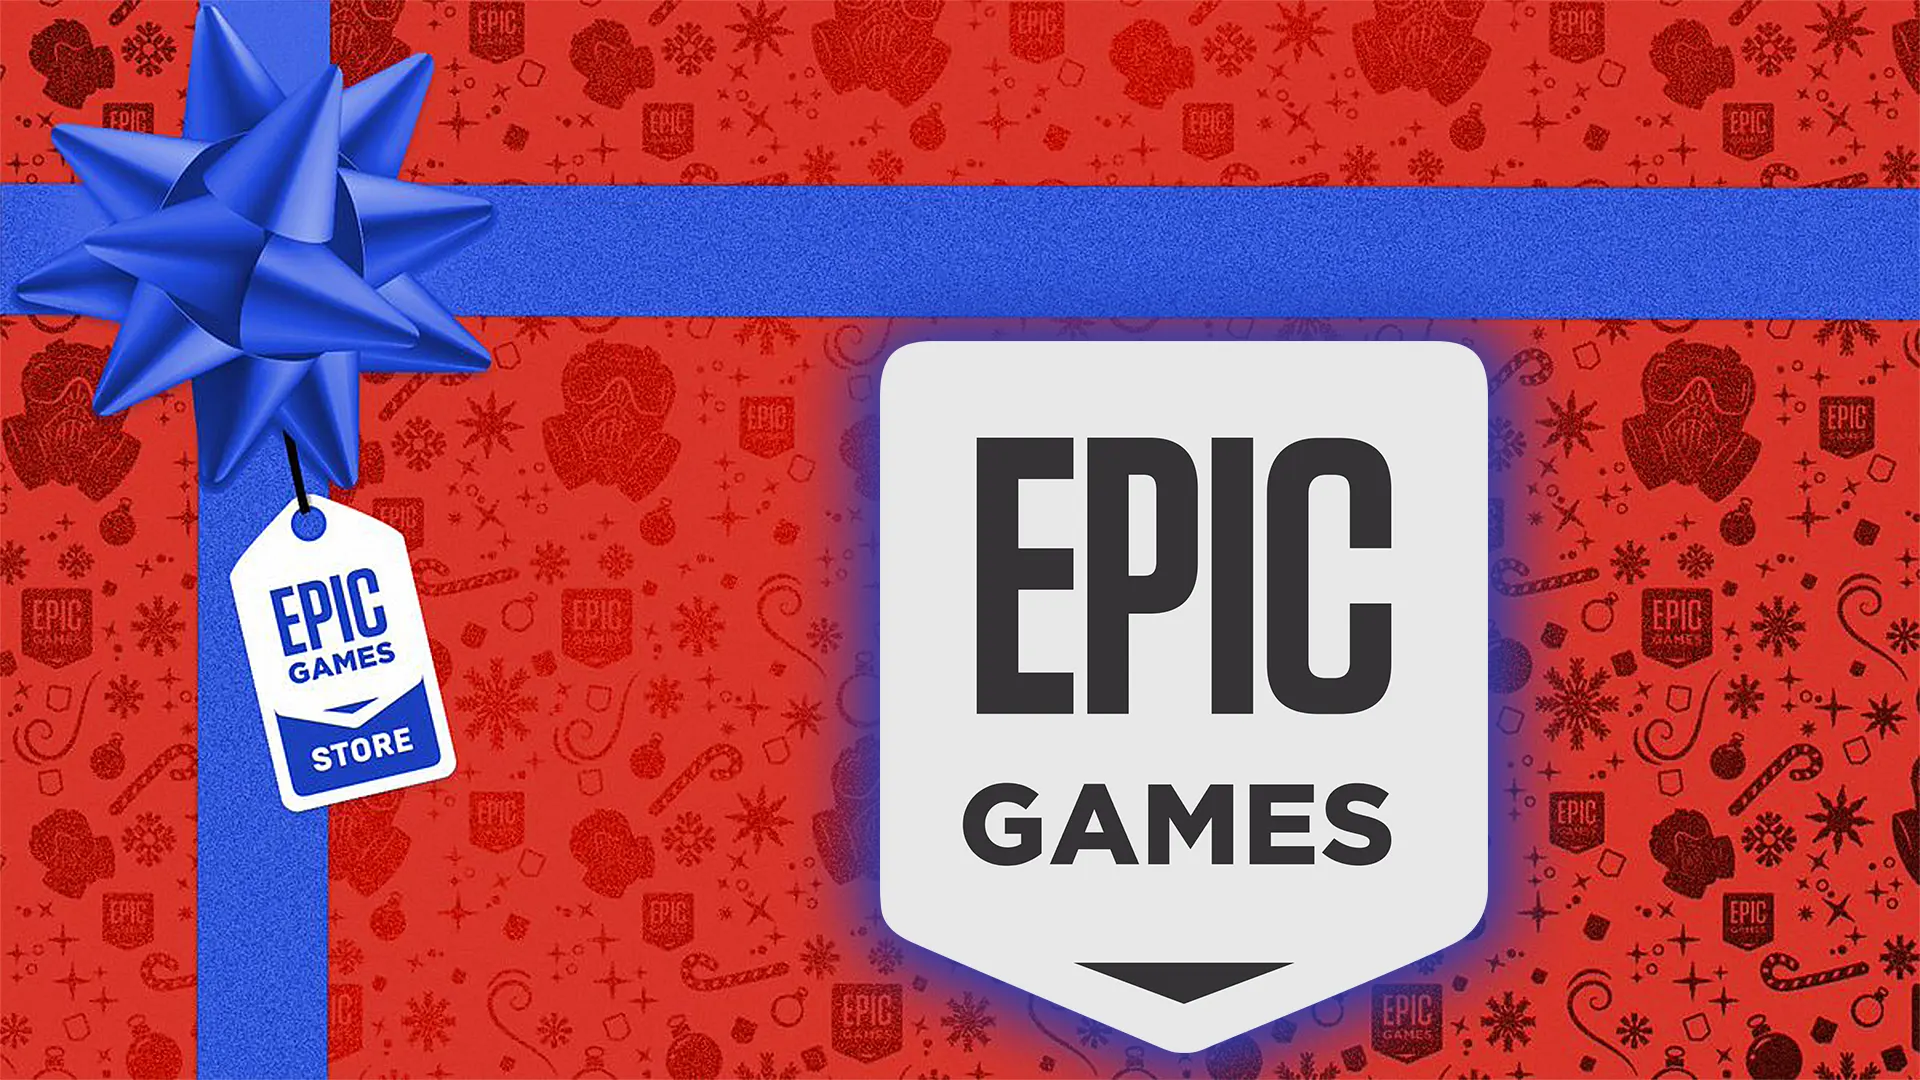 O terceiro jogo misterioso da Epic Games foi revelado no dia de hoje!